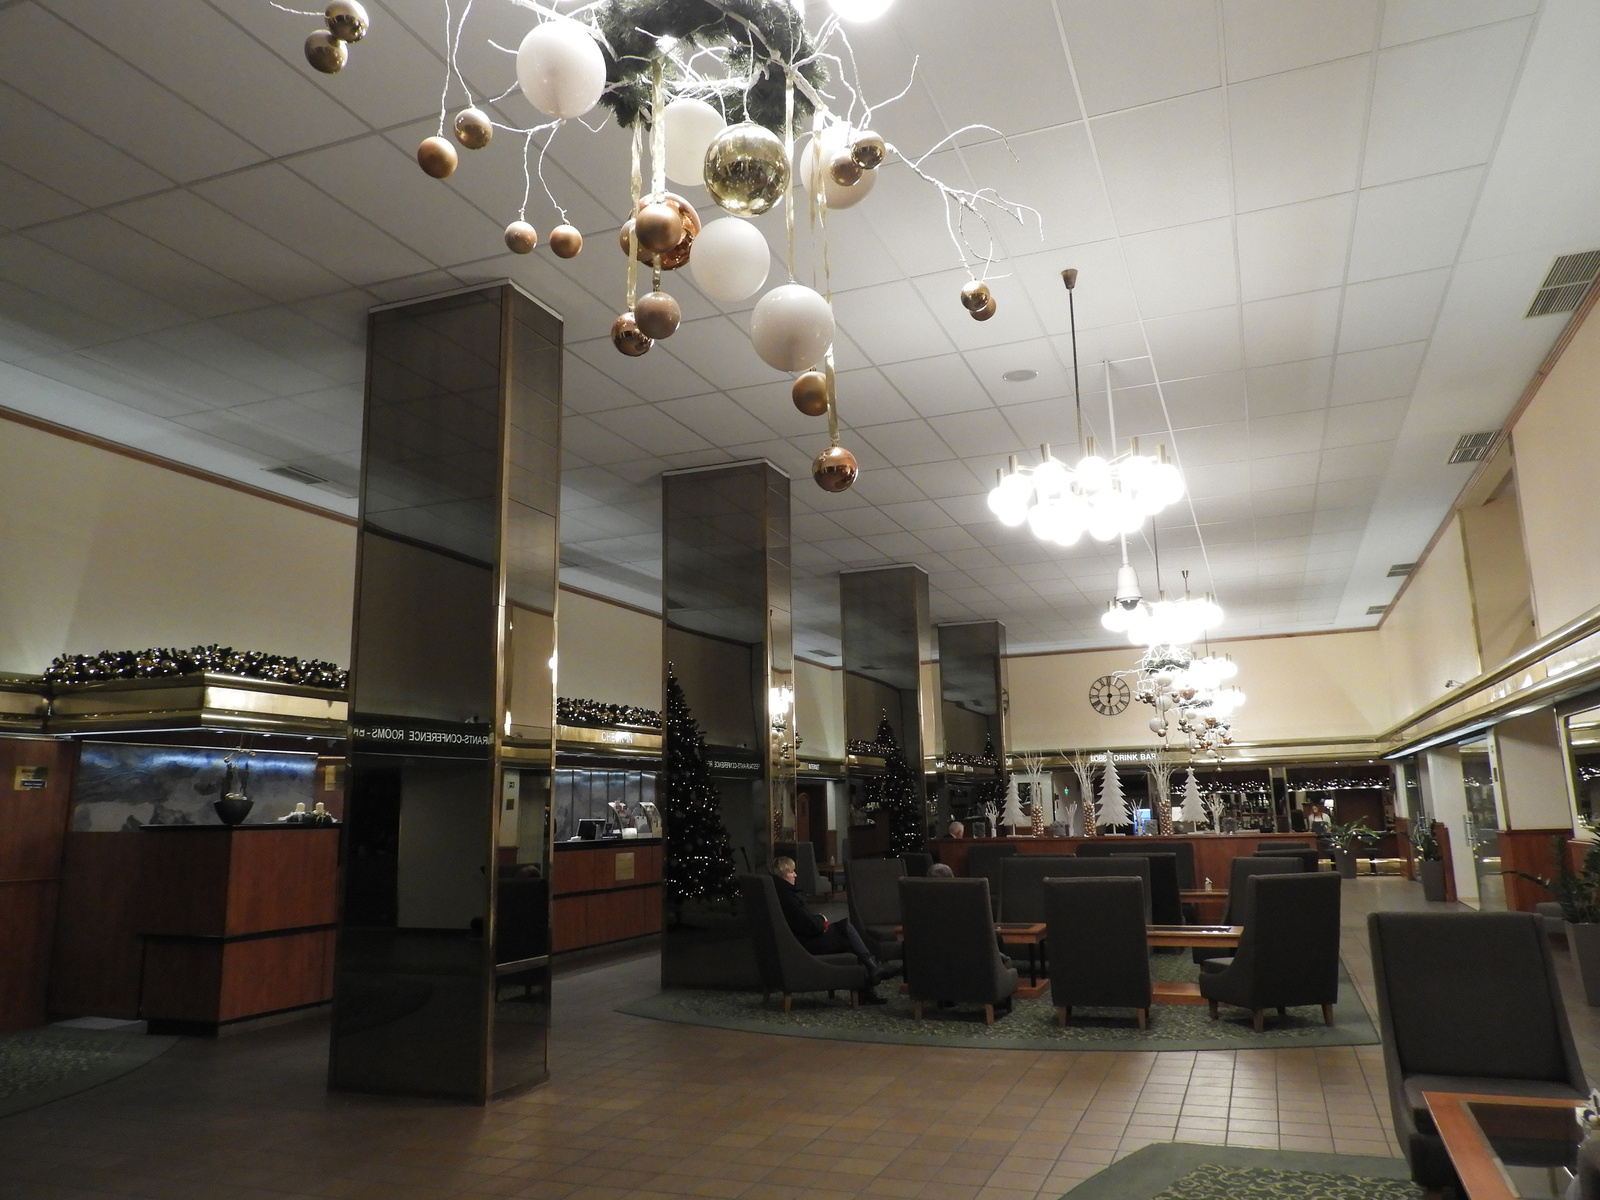 A lobby